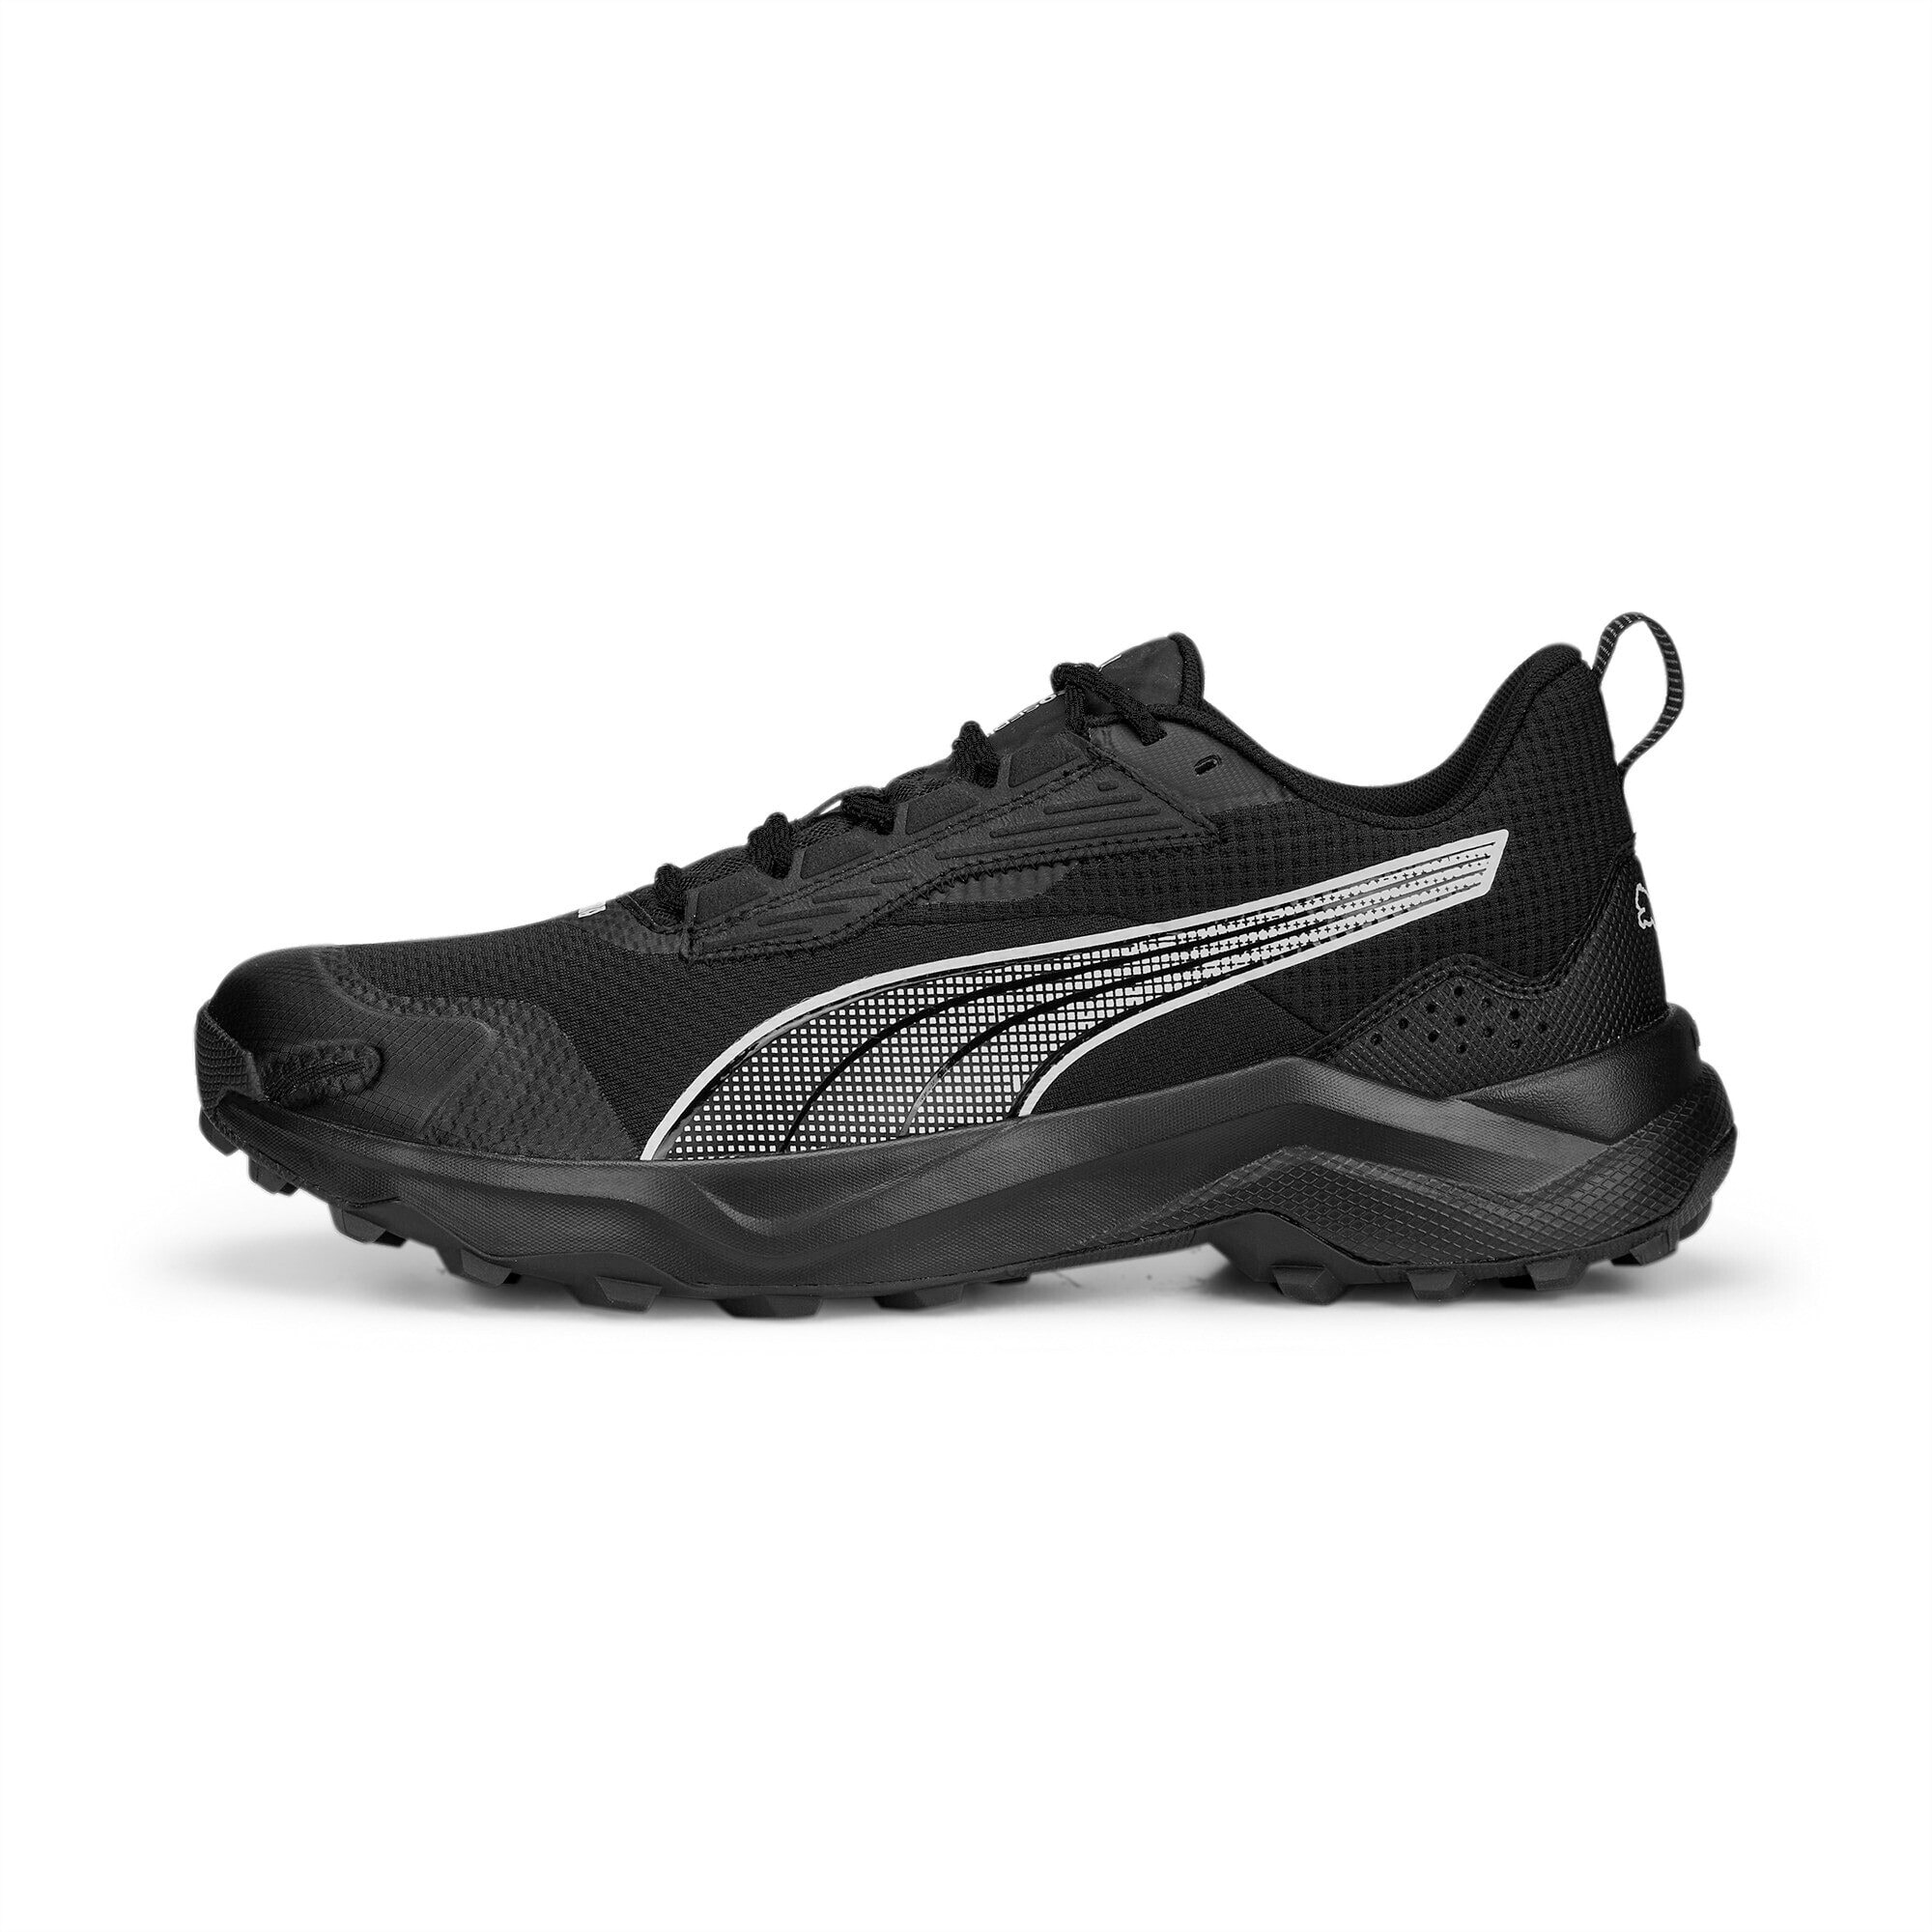 PUMA Chaussures De Running Obstruct Profoam, Noir/Gris